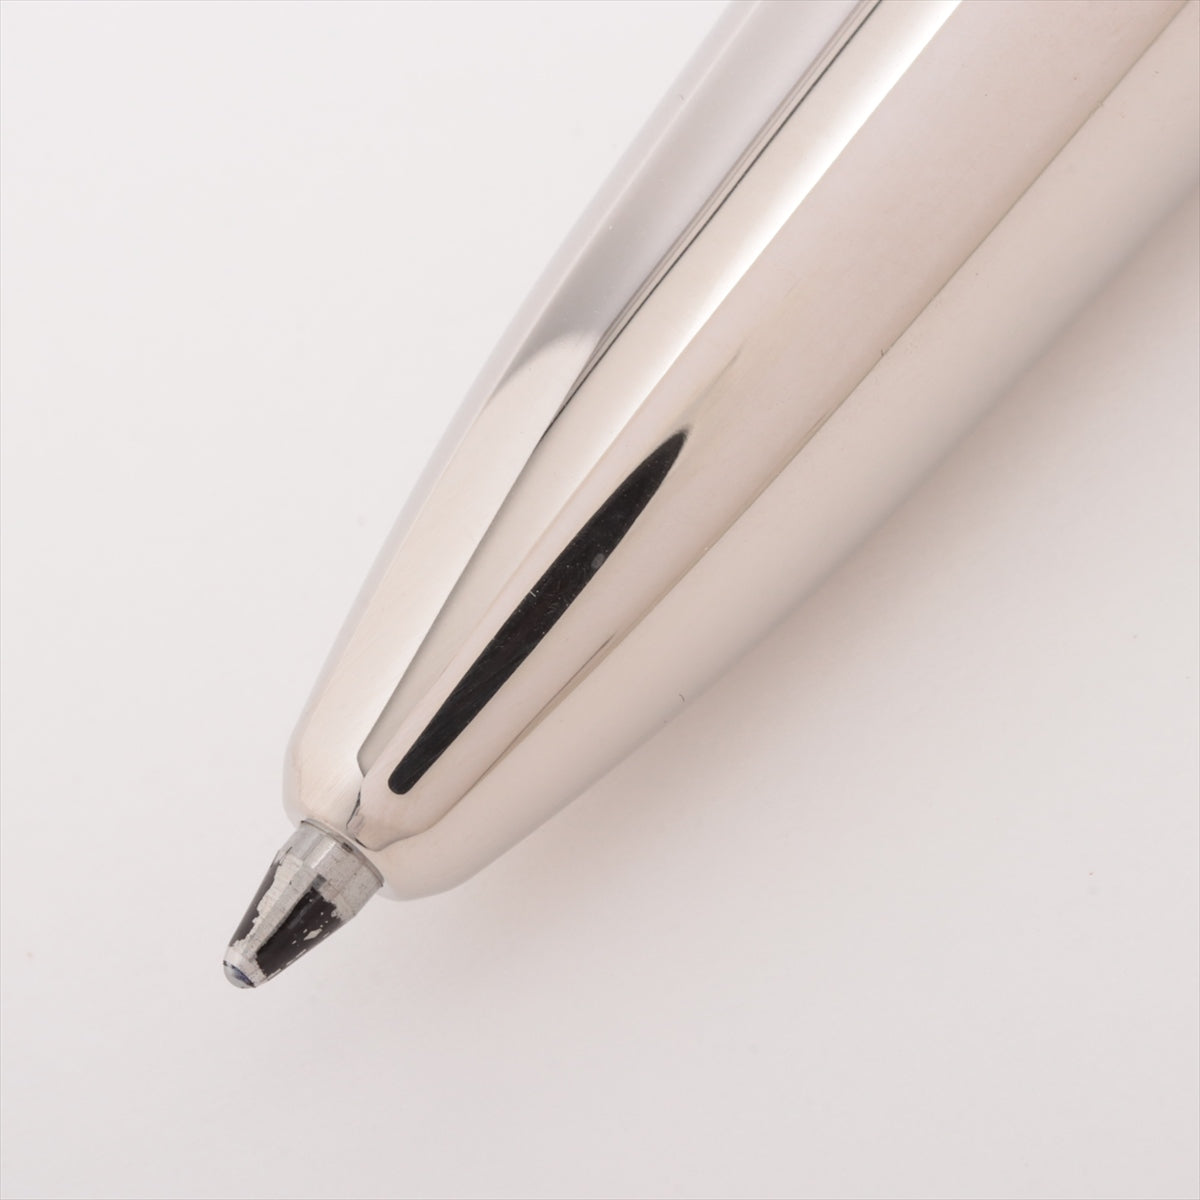 デュポン ボールペン メタル×レジン ブラック×シルバー シャープペンのみ筆記可能 5ANBF26 デフィ マルチファンクションペン シャープペン リフィル付き